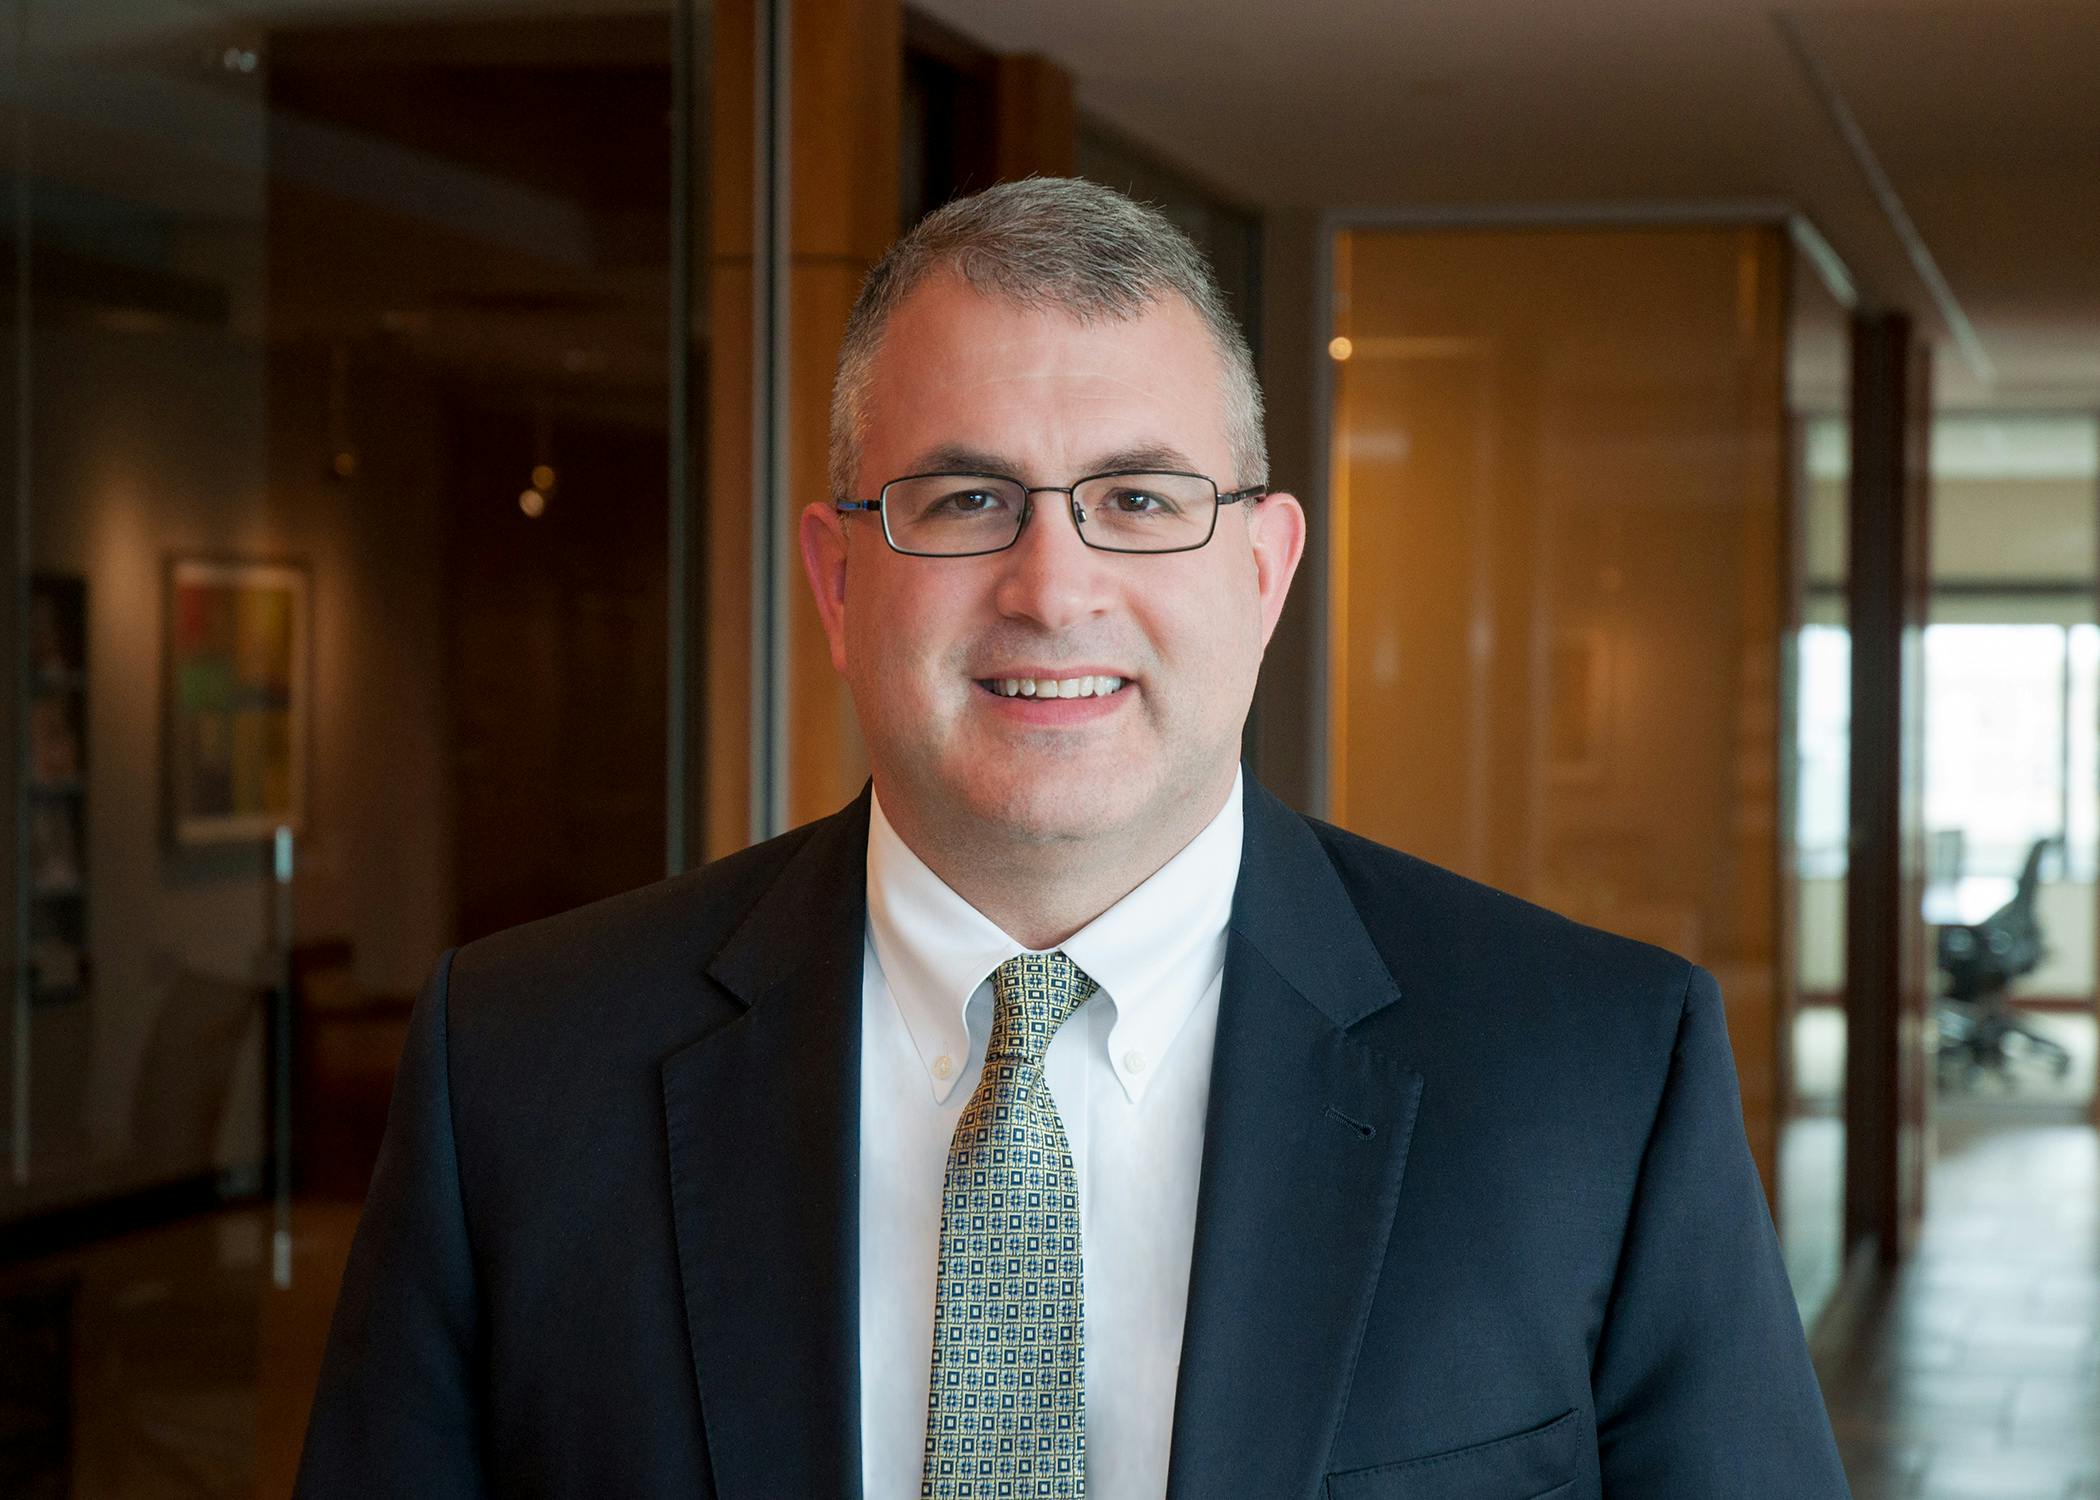 Jared C. Lusk - Real Estate lawyer - Nixon Peabody LLP